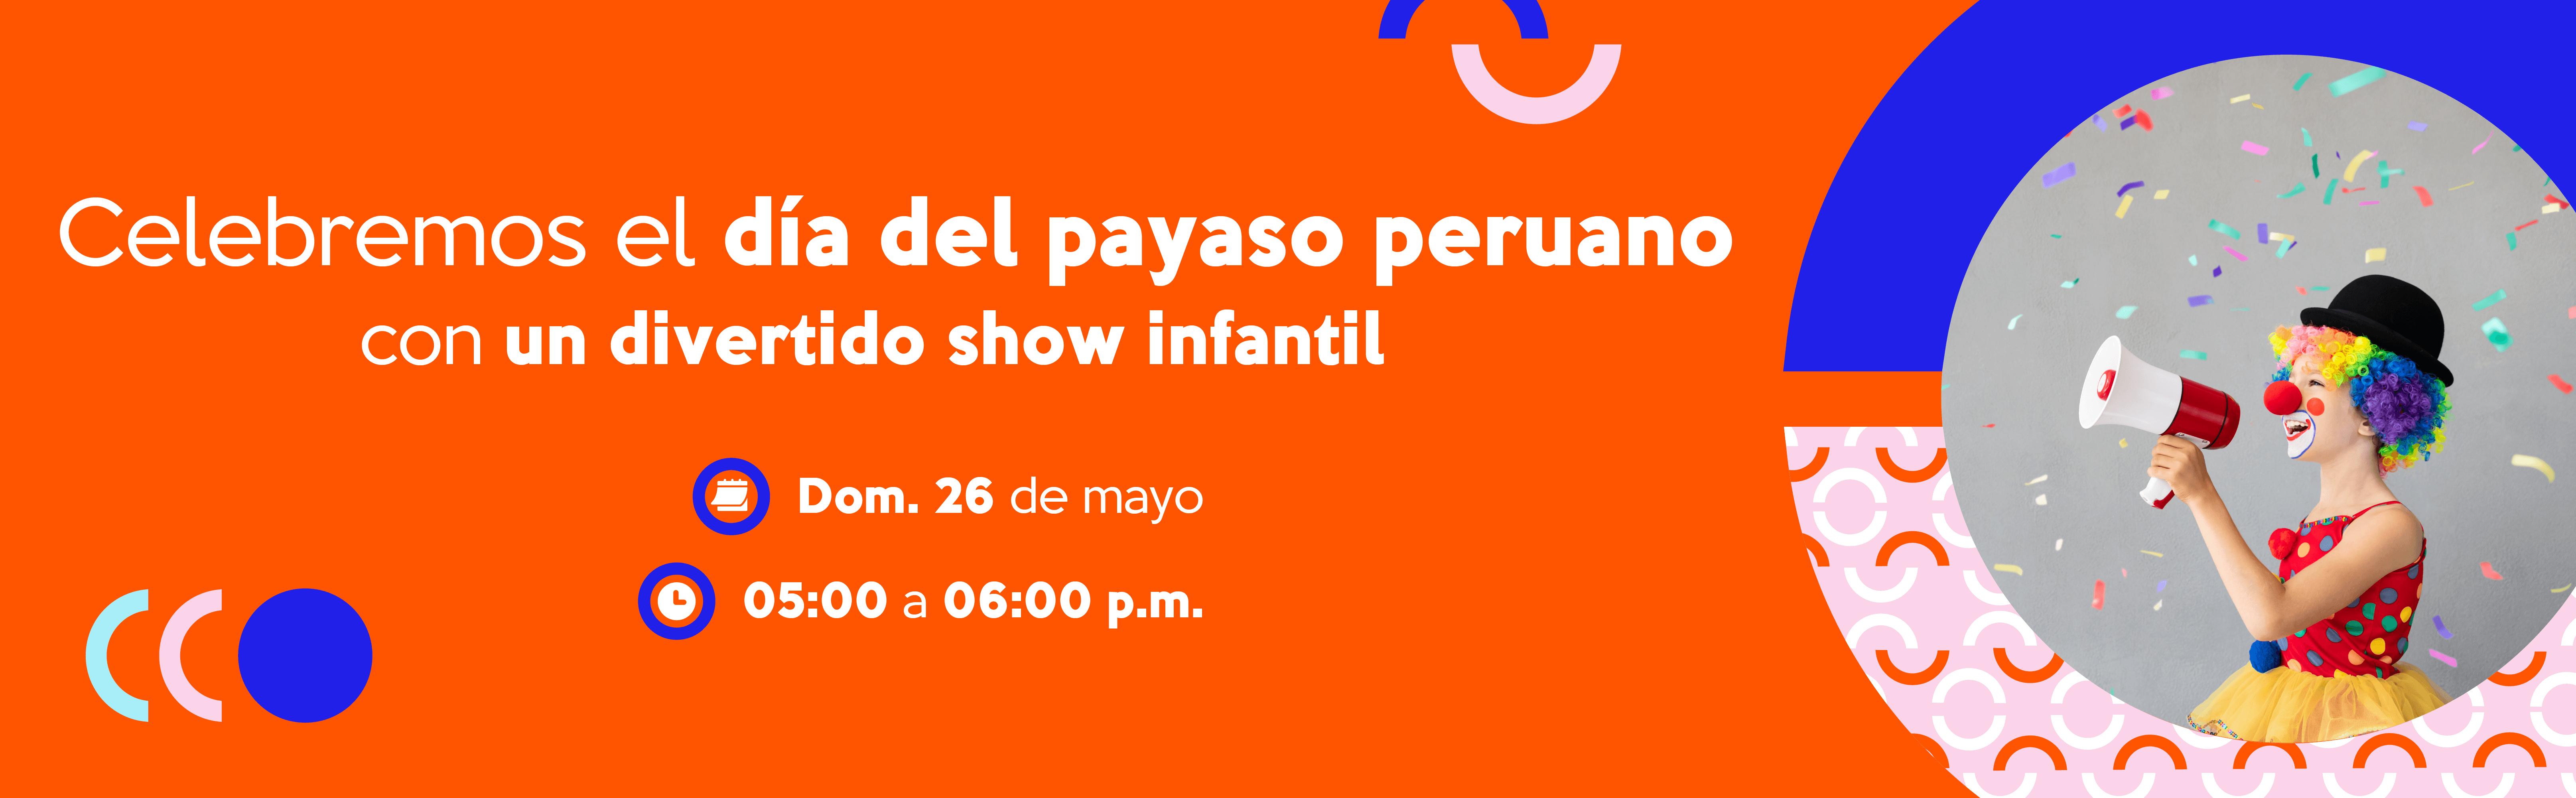 Celebremos el día del payaso peruano con un divertido show infantil